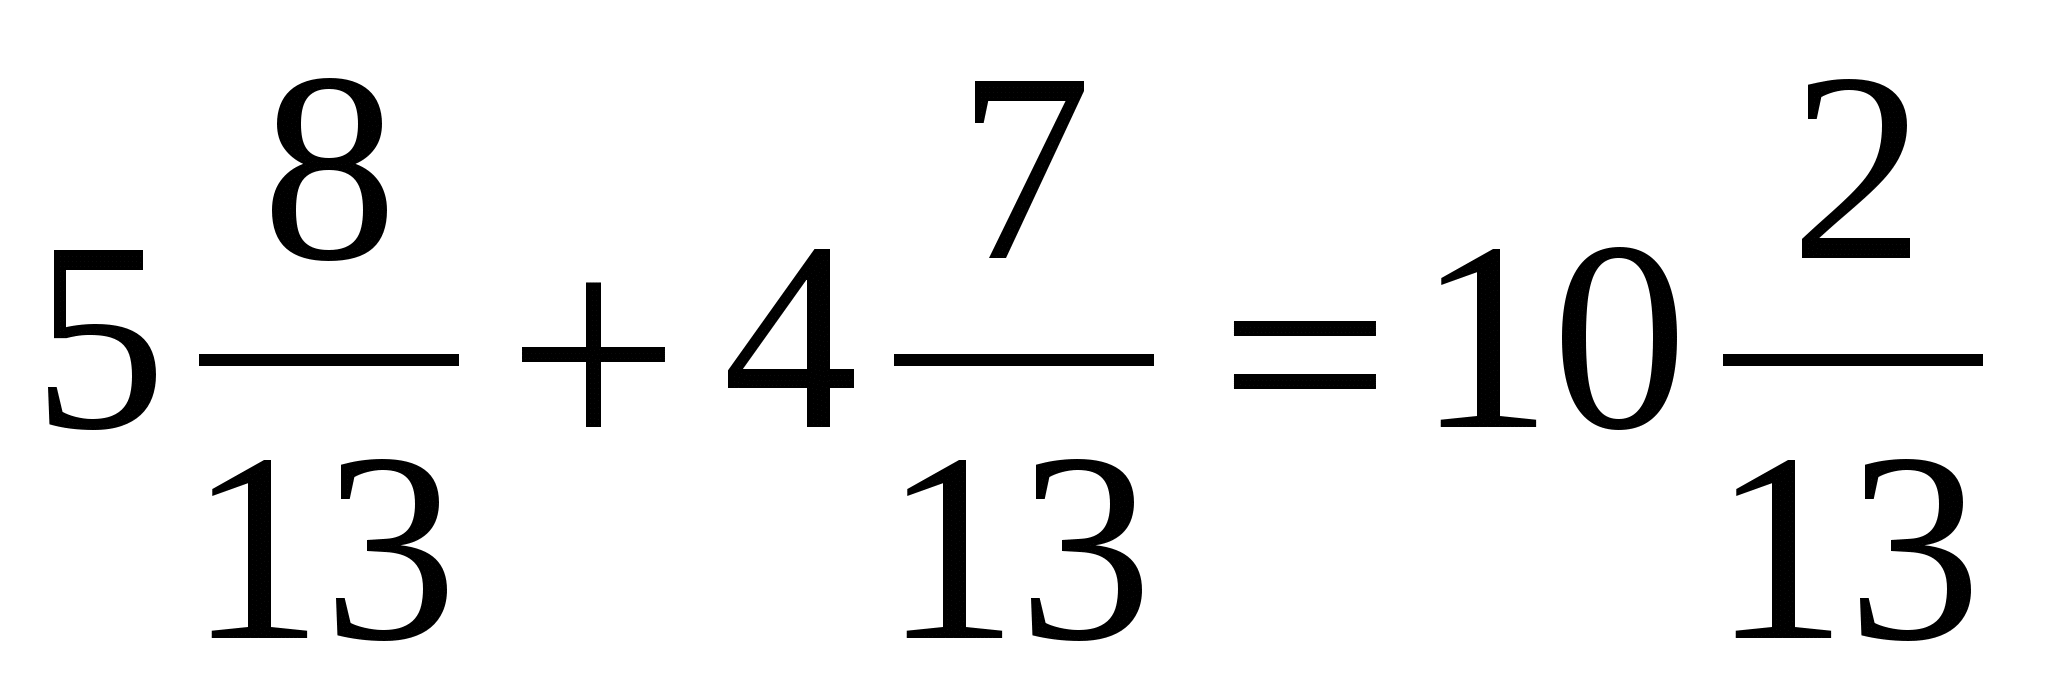 План-конспект урока по математике на тему Сравнение десятичных дробей